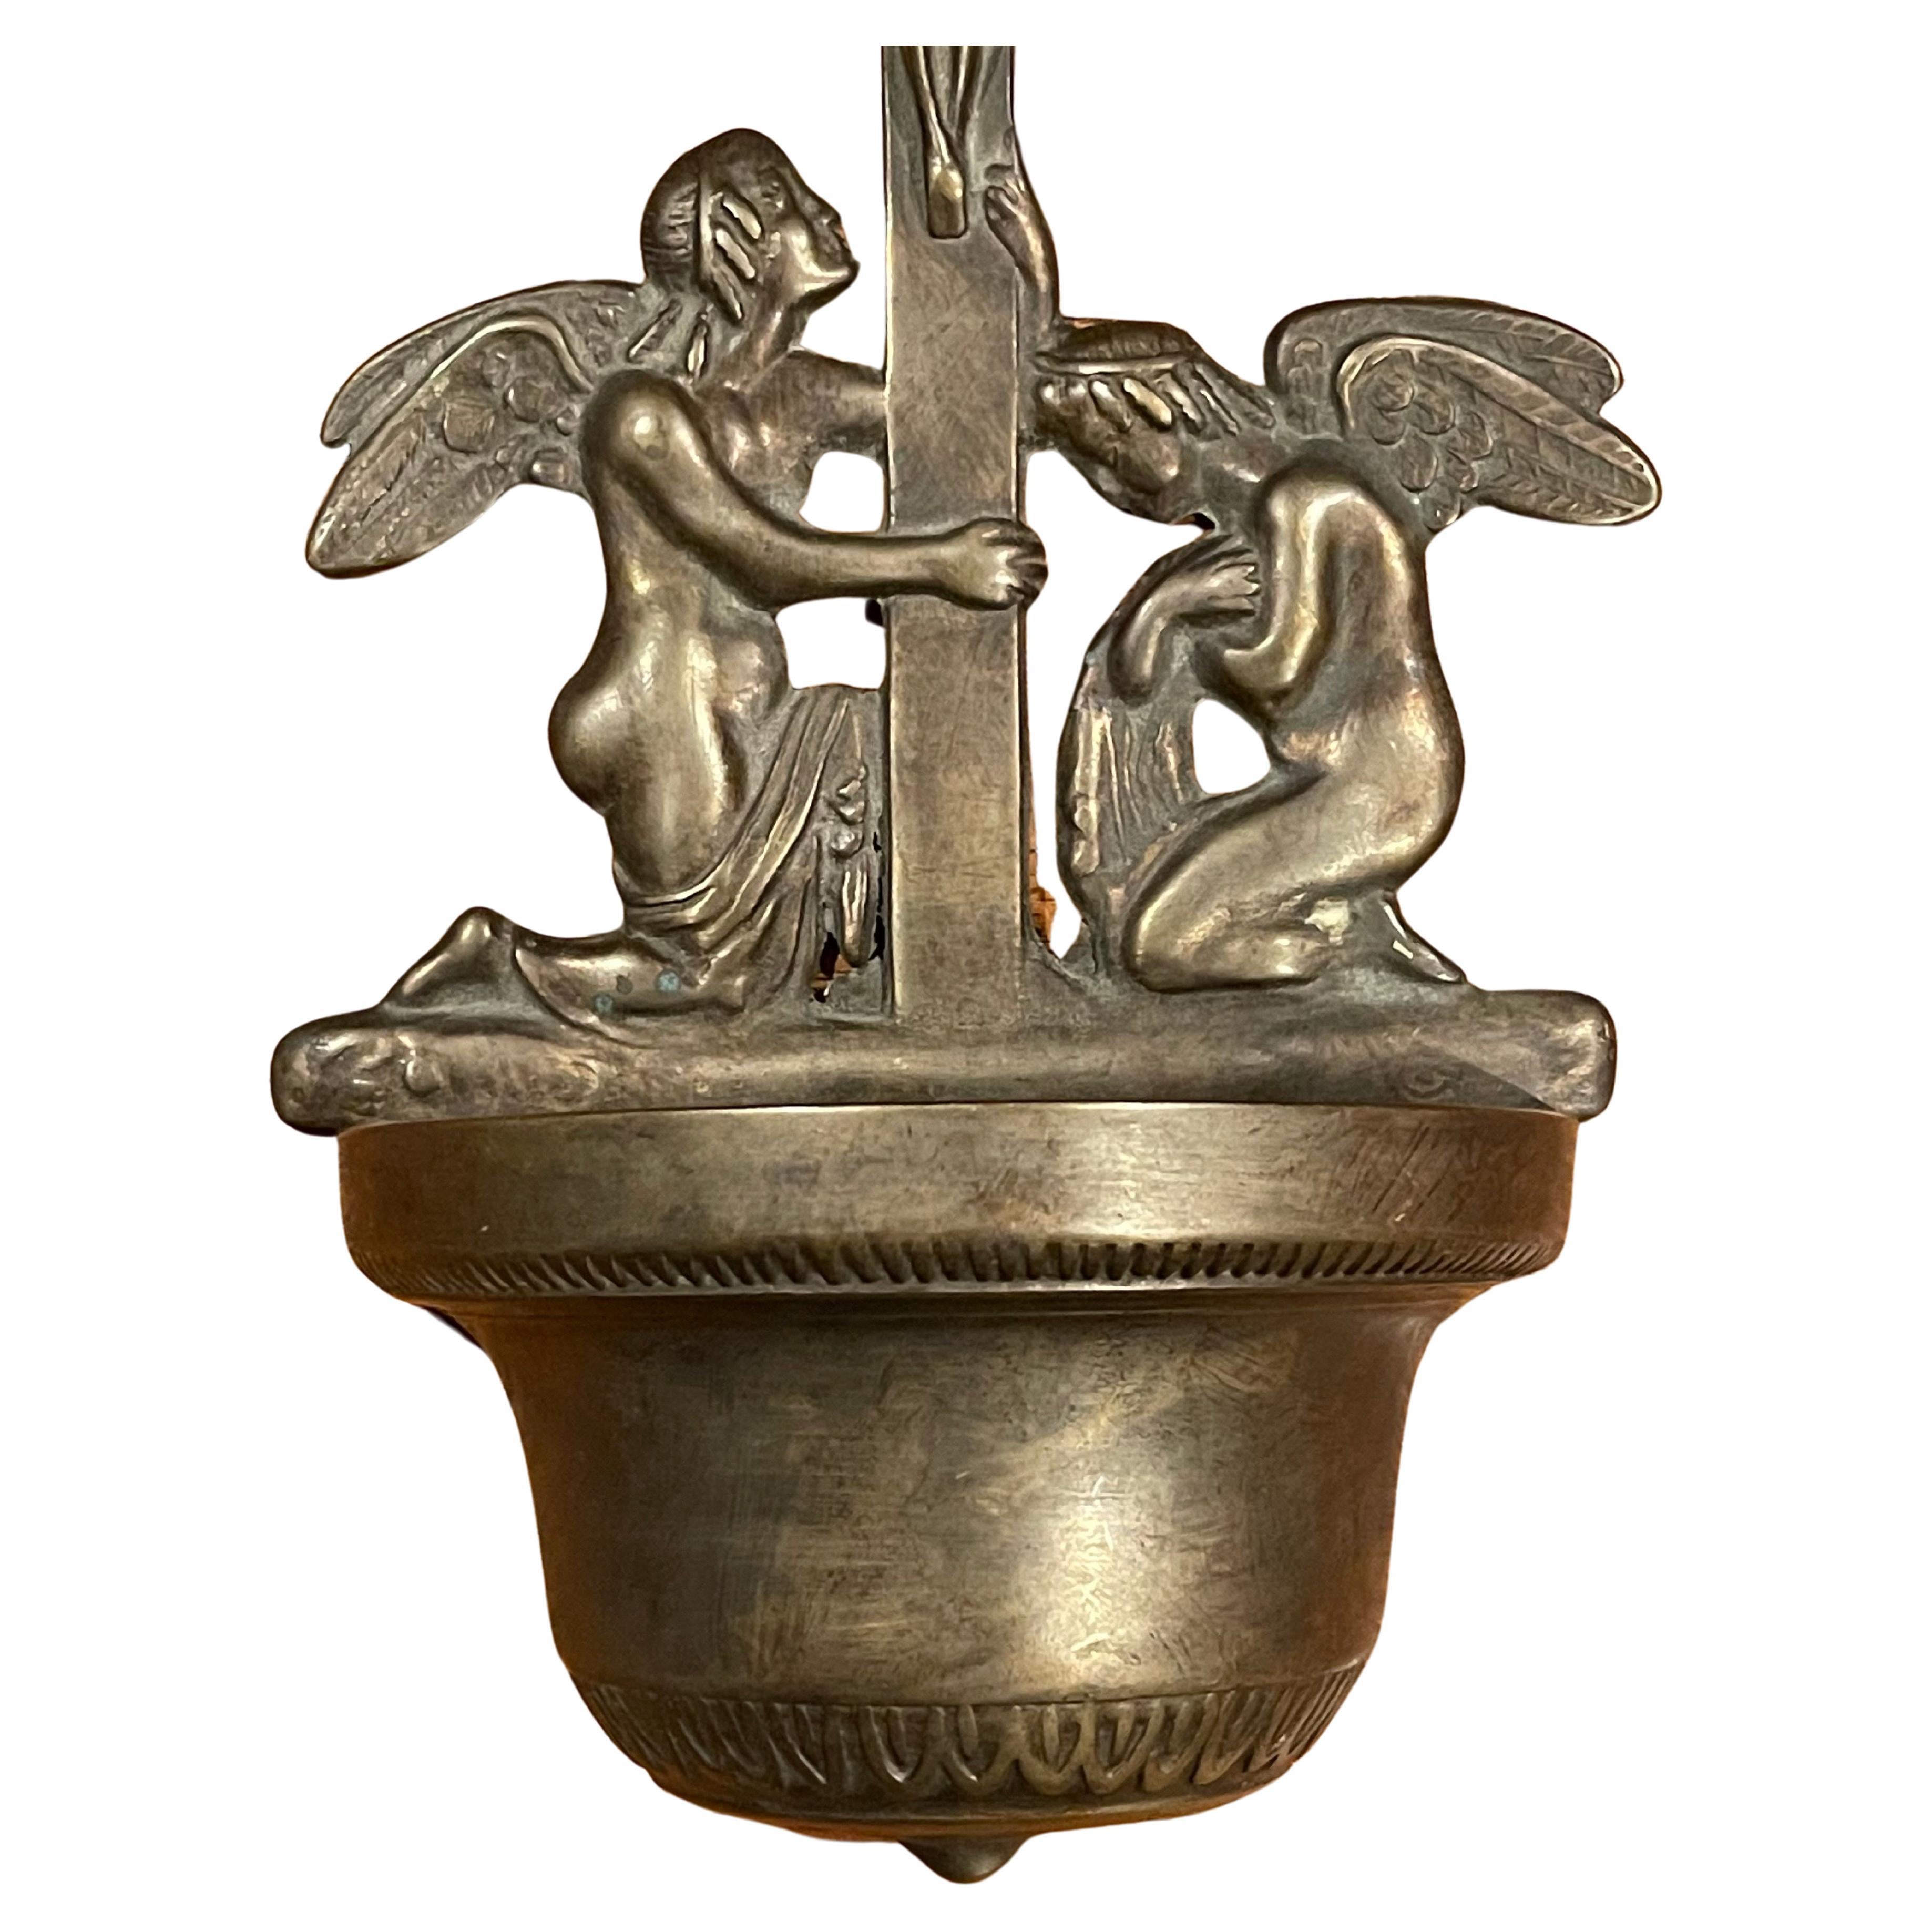 Italienischer Weihwasserspender aus Bronze, ca. 1980. Die Schale ist in gutem Vintage-Zustand und misst 6,25 